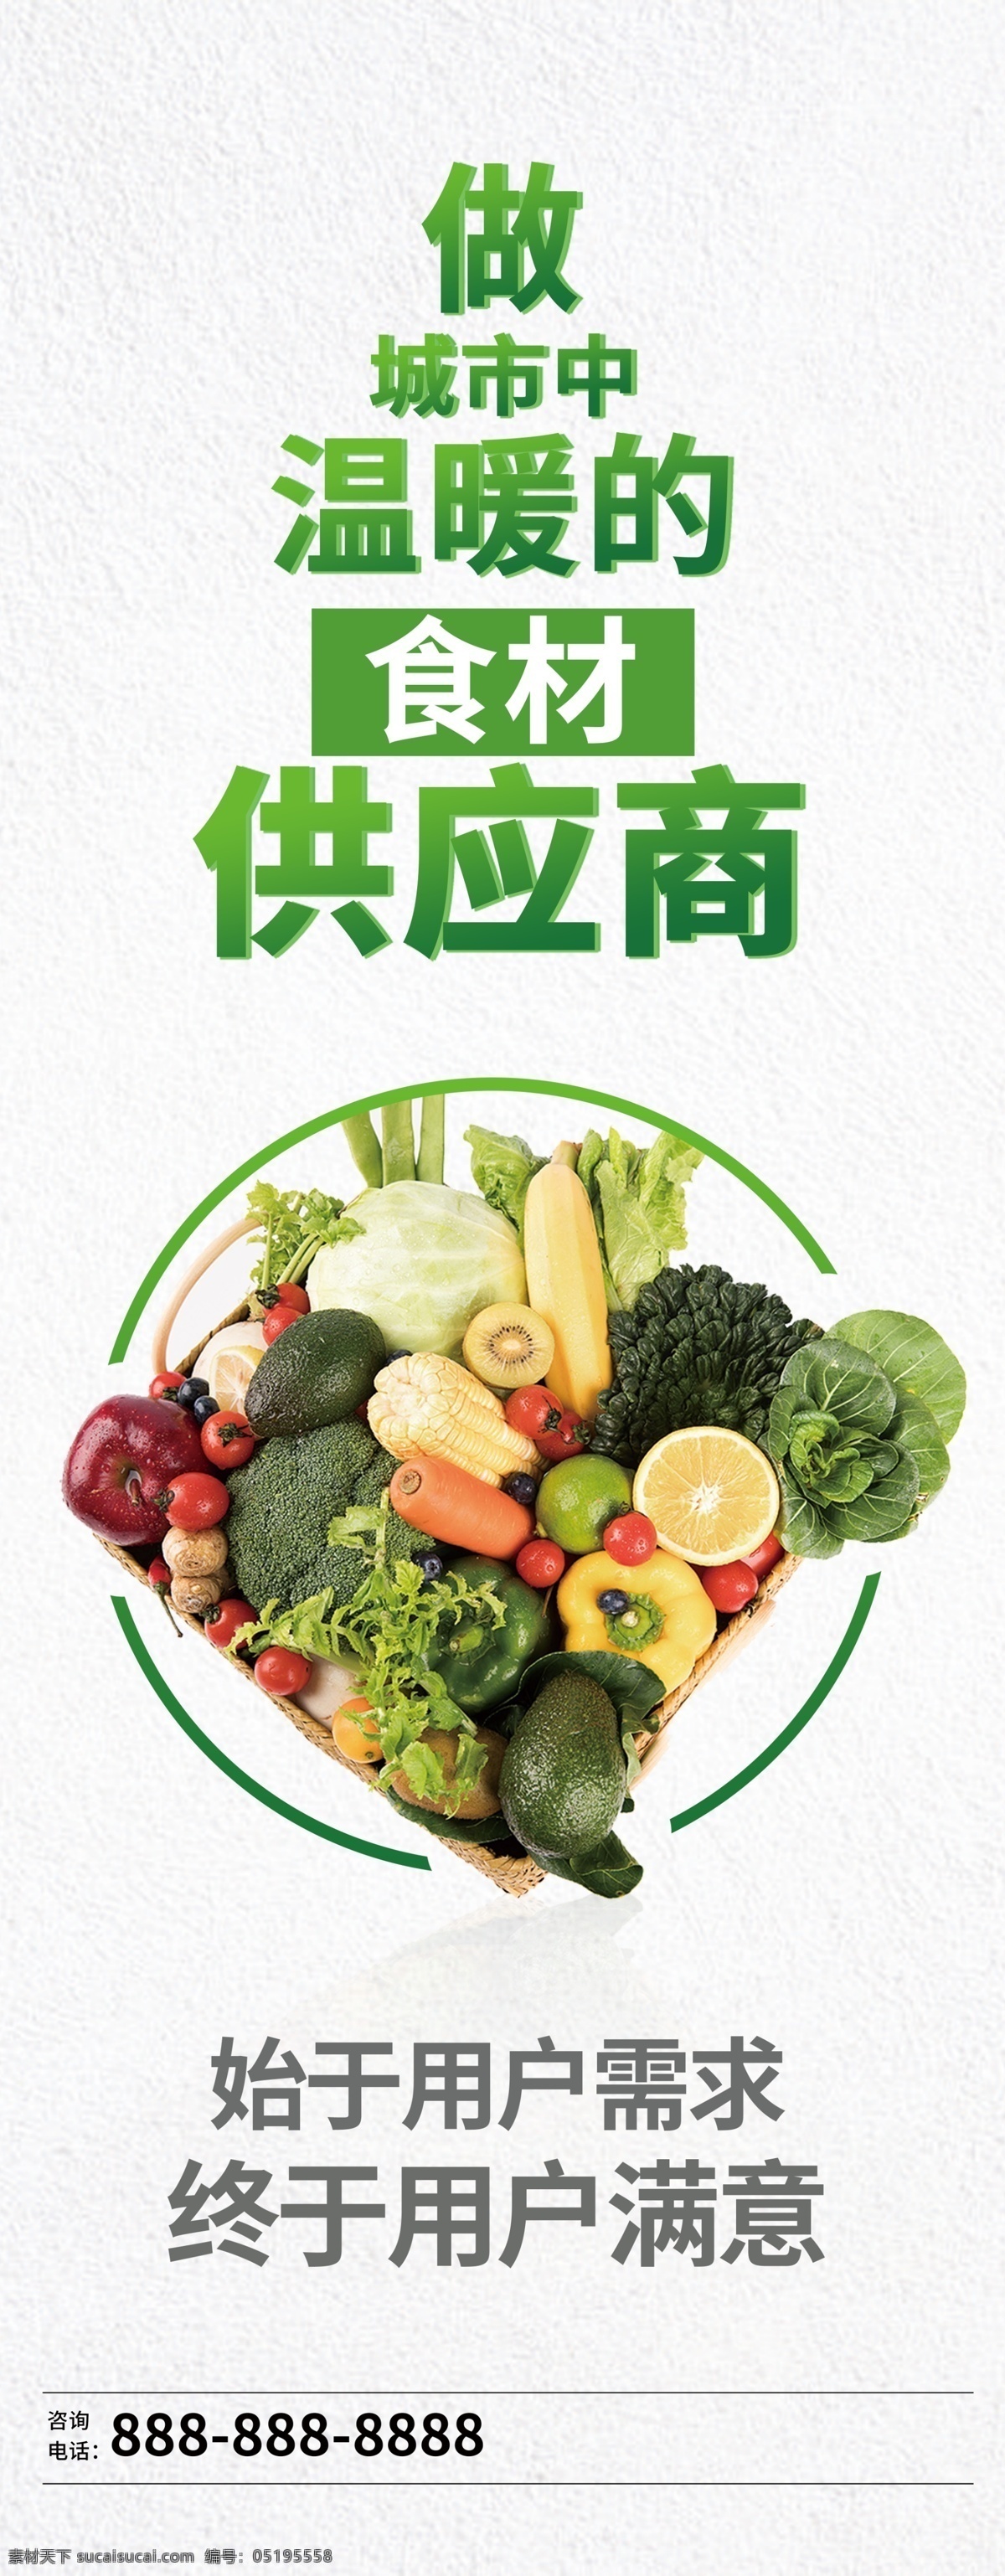 果蔬 供应商 海报 诚招 应聘 宣传 蔬菜 网站 美食 外卖 团购 海鲜